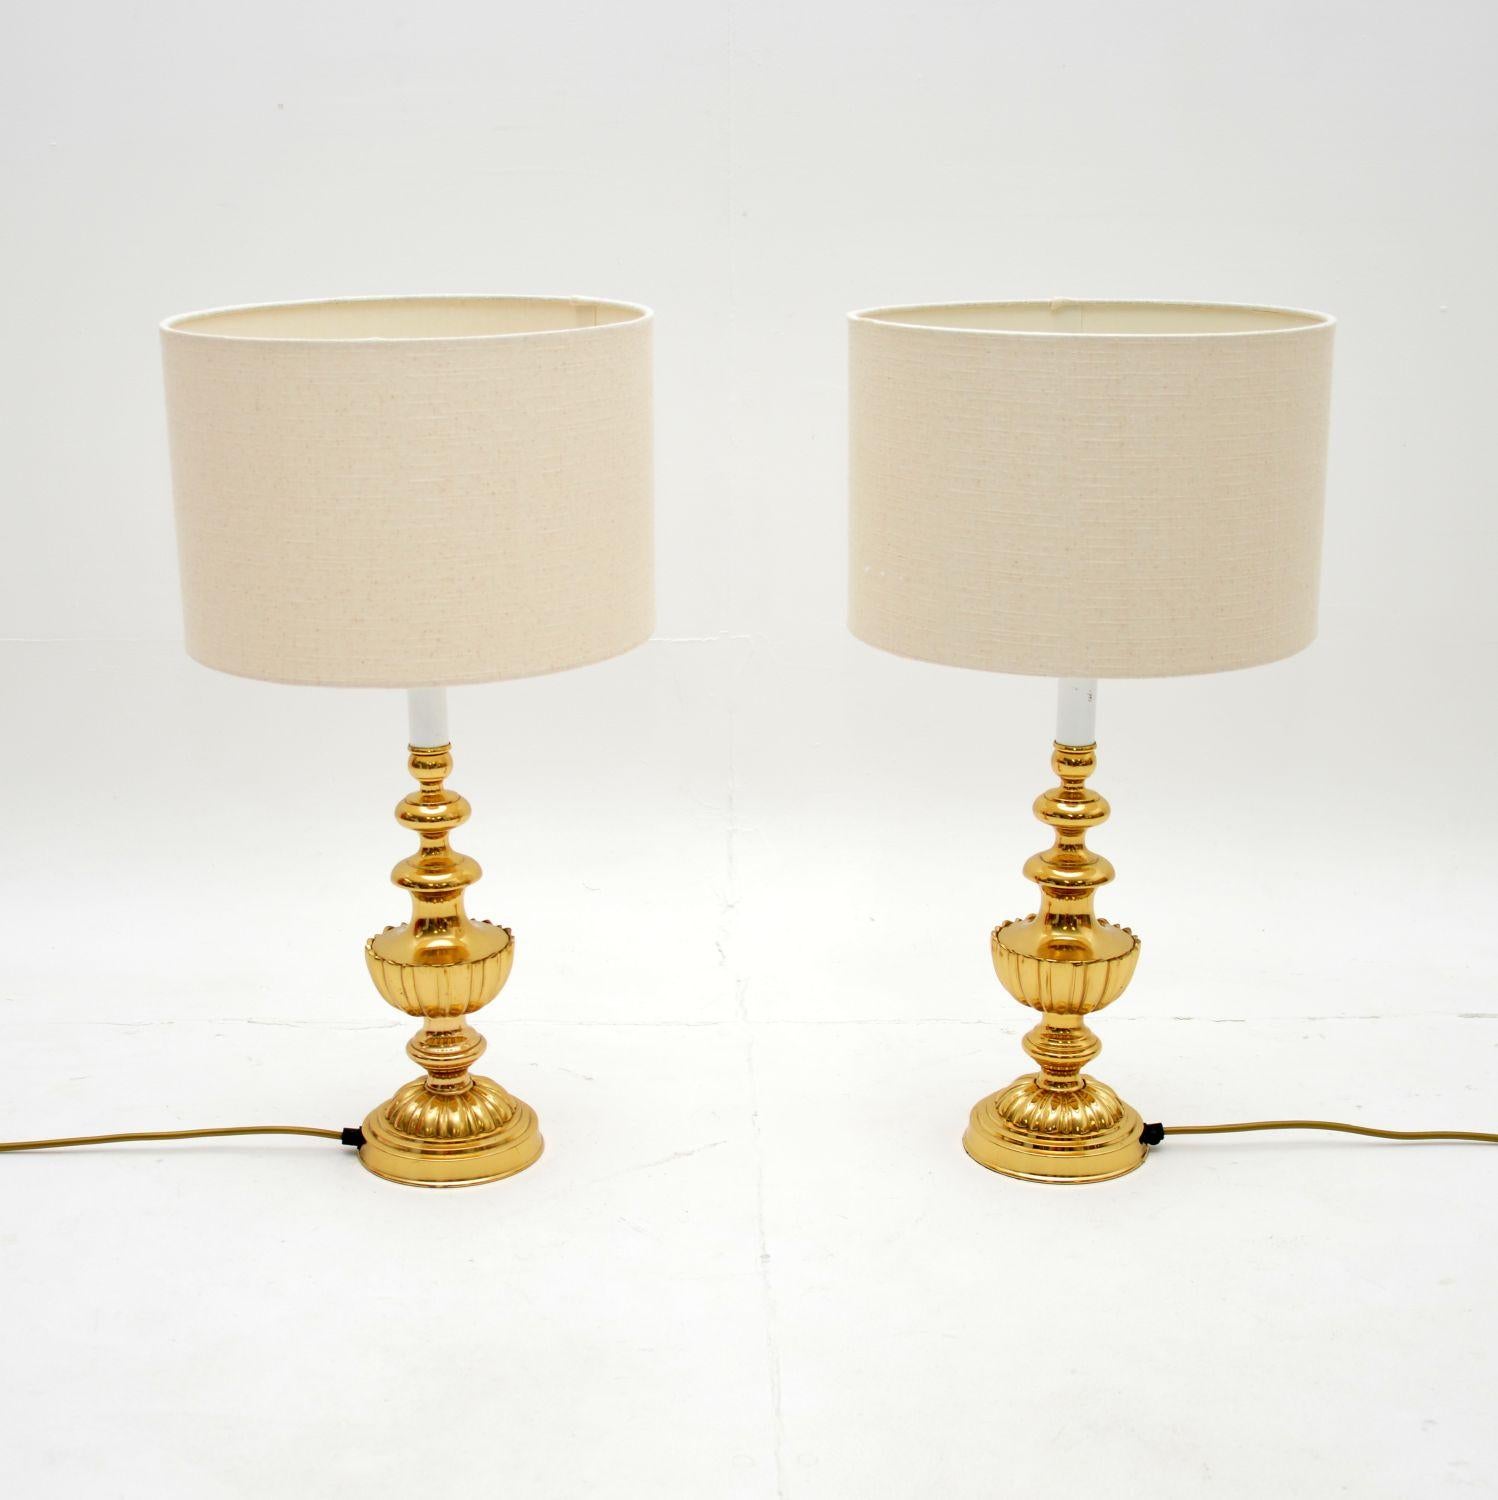 Ein fabelhaftes und stilvolles Paar Vintage-Tischlampen aus Messing. Sie wurden in England hergestellt und stammen etwa aus den 1970er Jahren.

Die Qualität ist hervorragend, sie sind wirklich gut verarbeitet und haben eine schöne Größe. Sie sind in